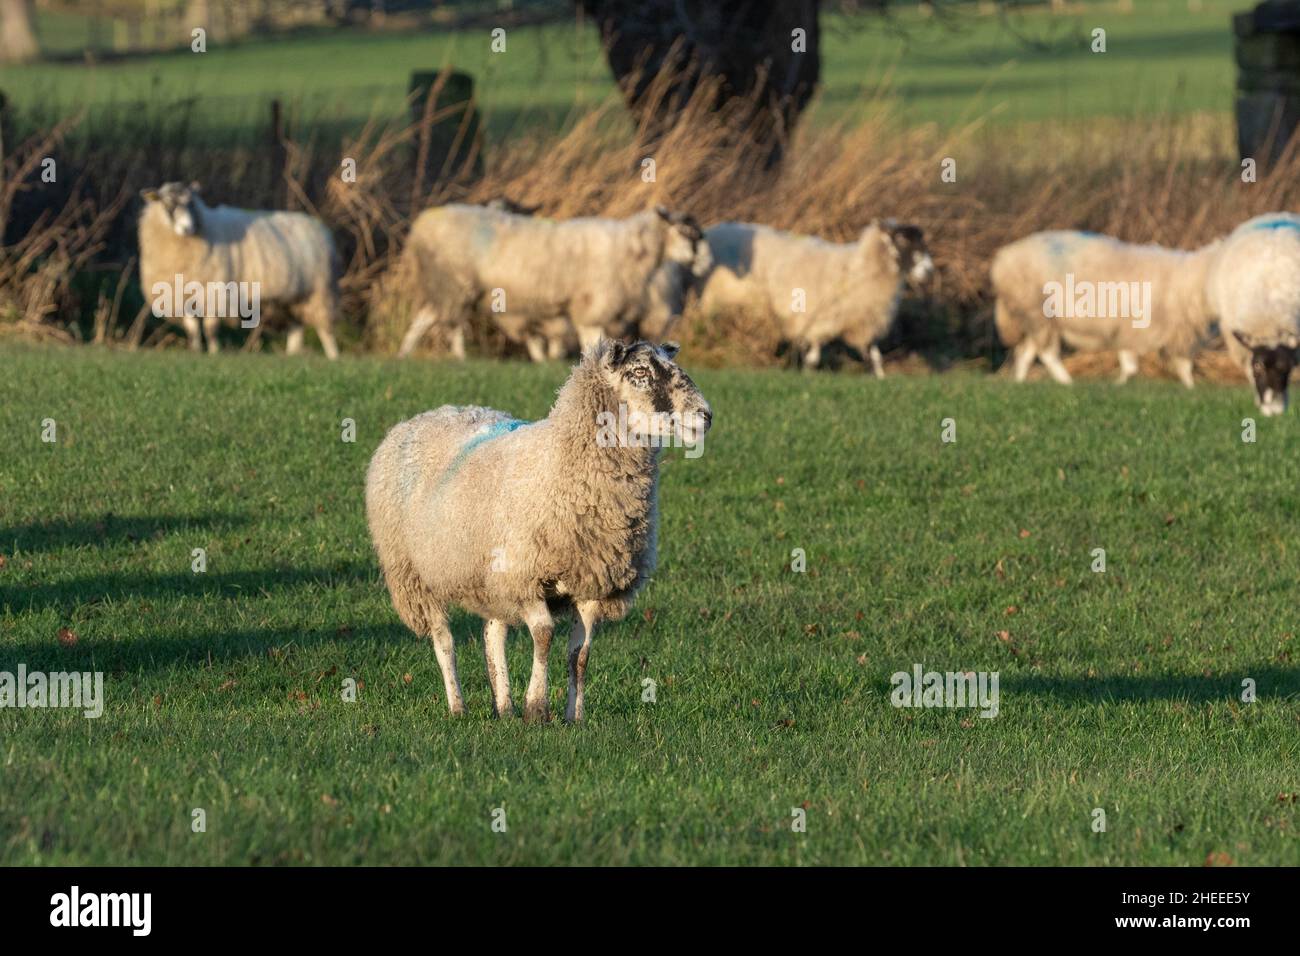 Schafe auf einem Feld in Baildon, Yorkshire. Die Schafe wurden mit farbiger Farbe markiert, dies sind smit-Markierungen und werden zur Identifizierung der Schafe verwendet. Stockfoto